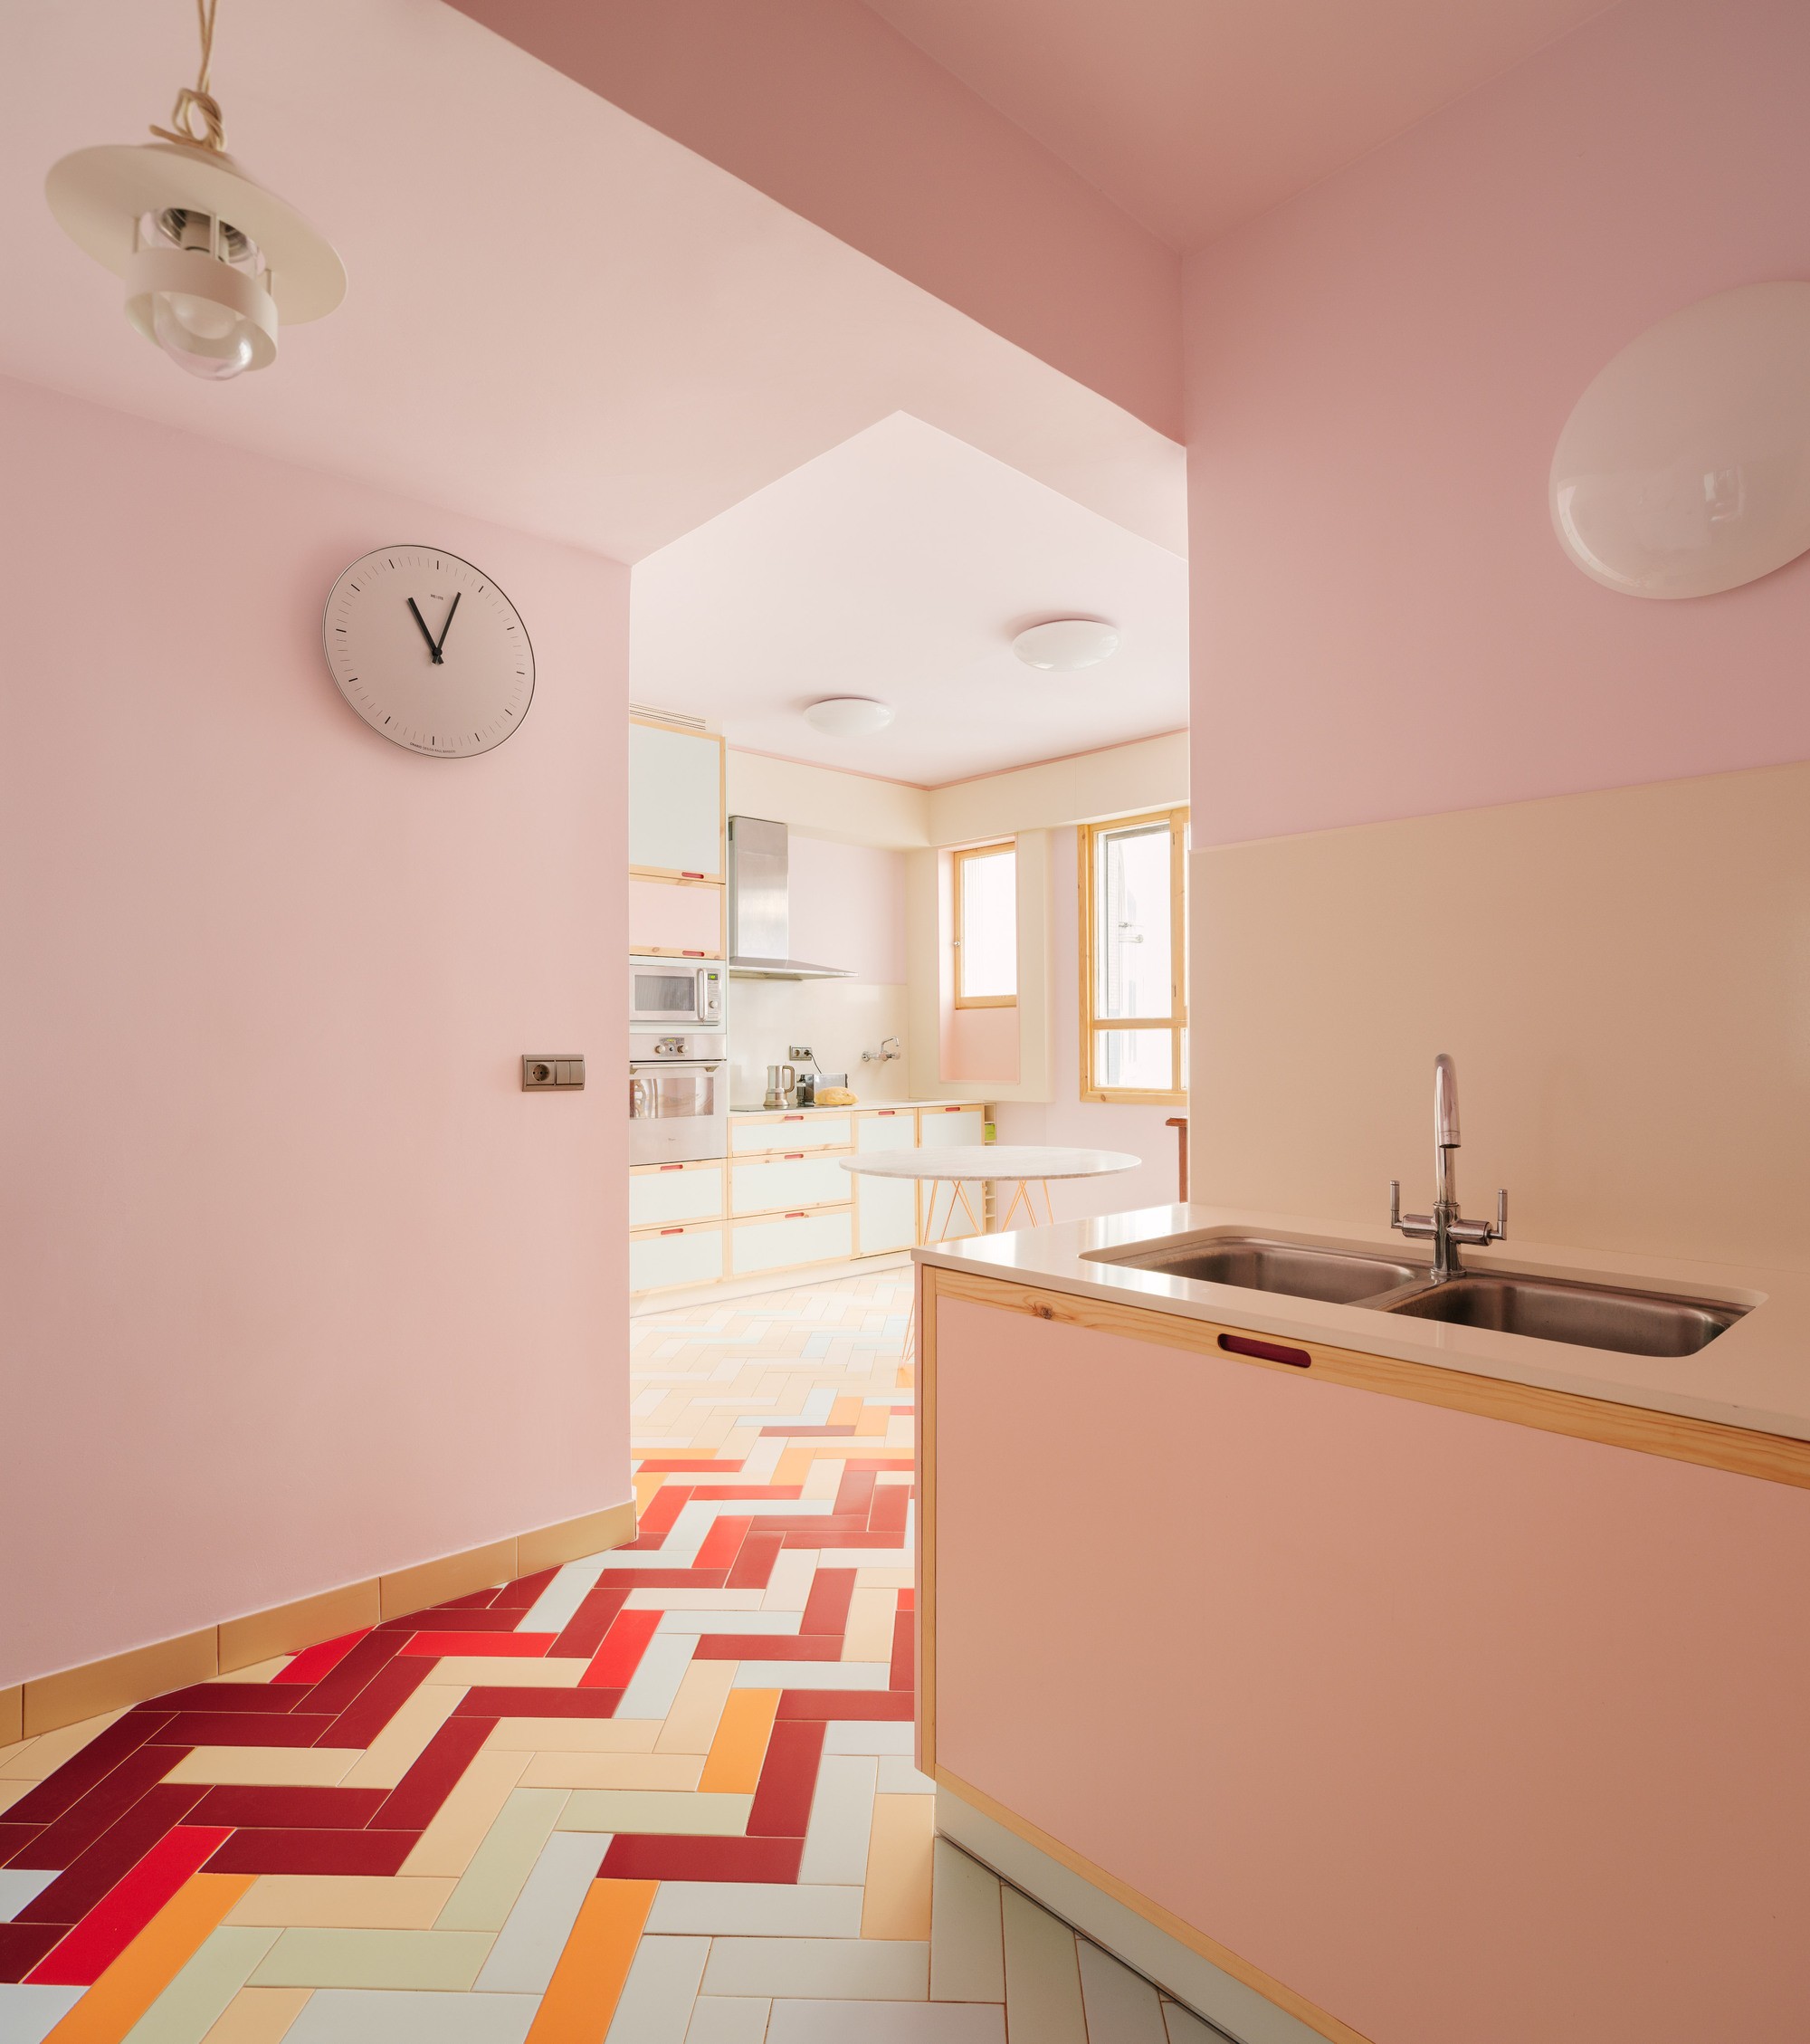 Décor do dia: cozinha rosa com piso colorido (Foto: Luis Diaz Diaz/Divulgação)